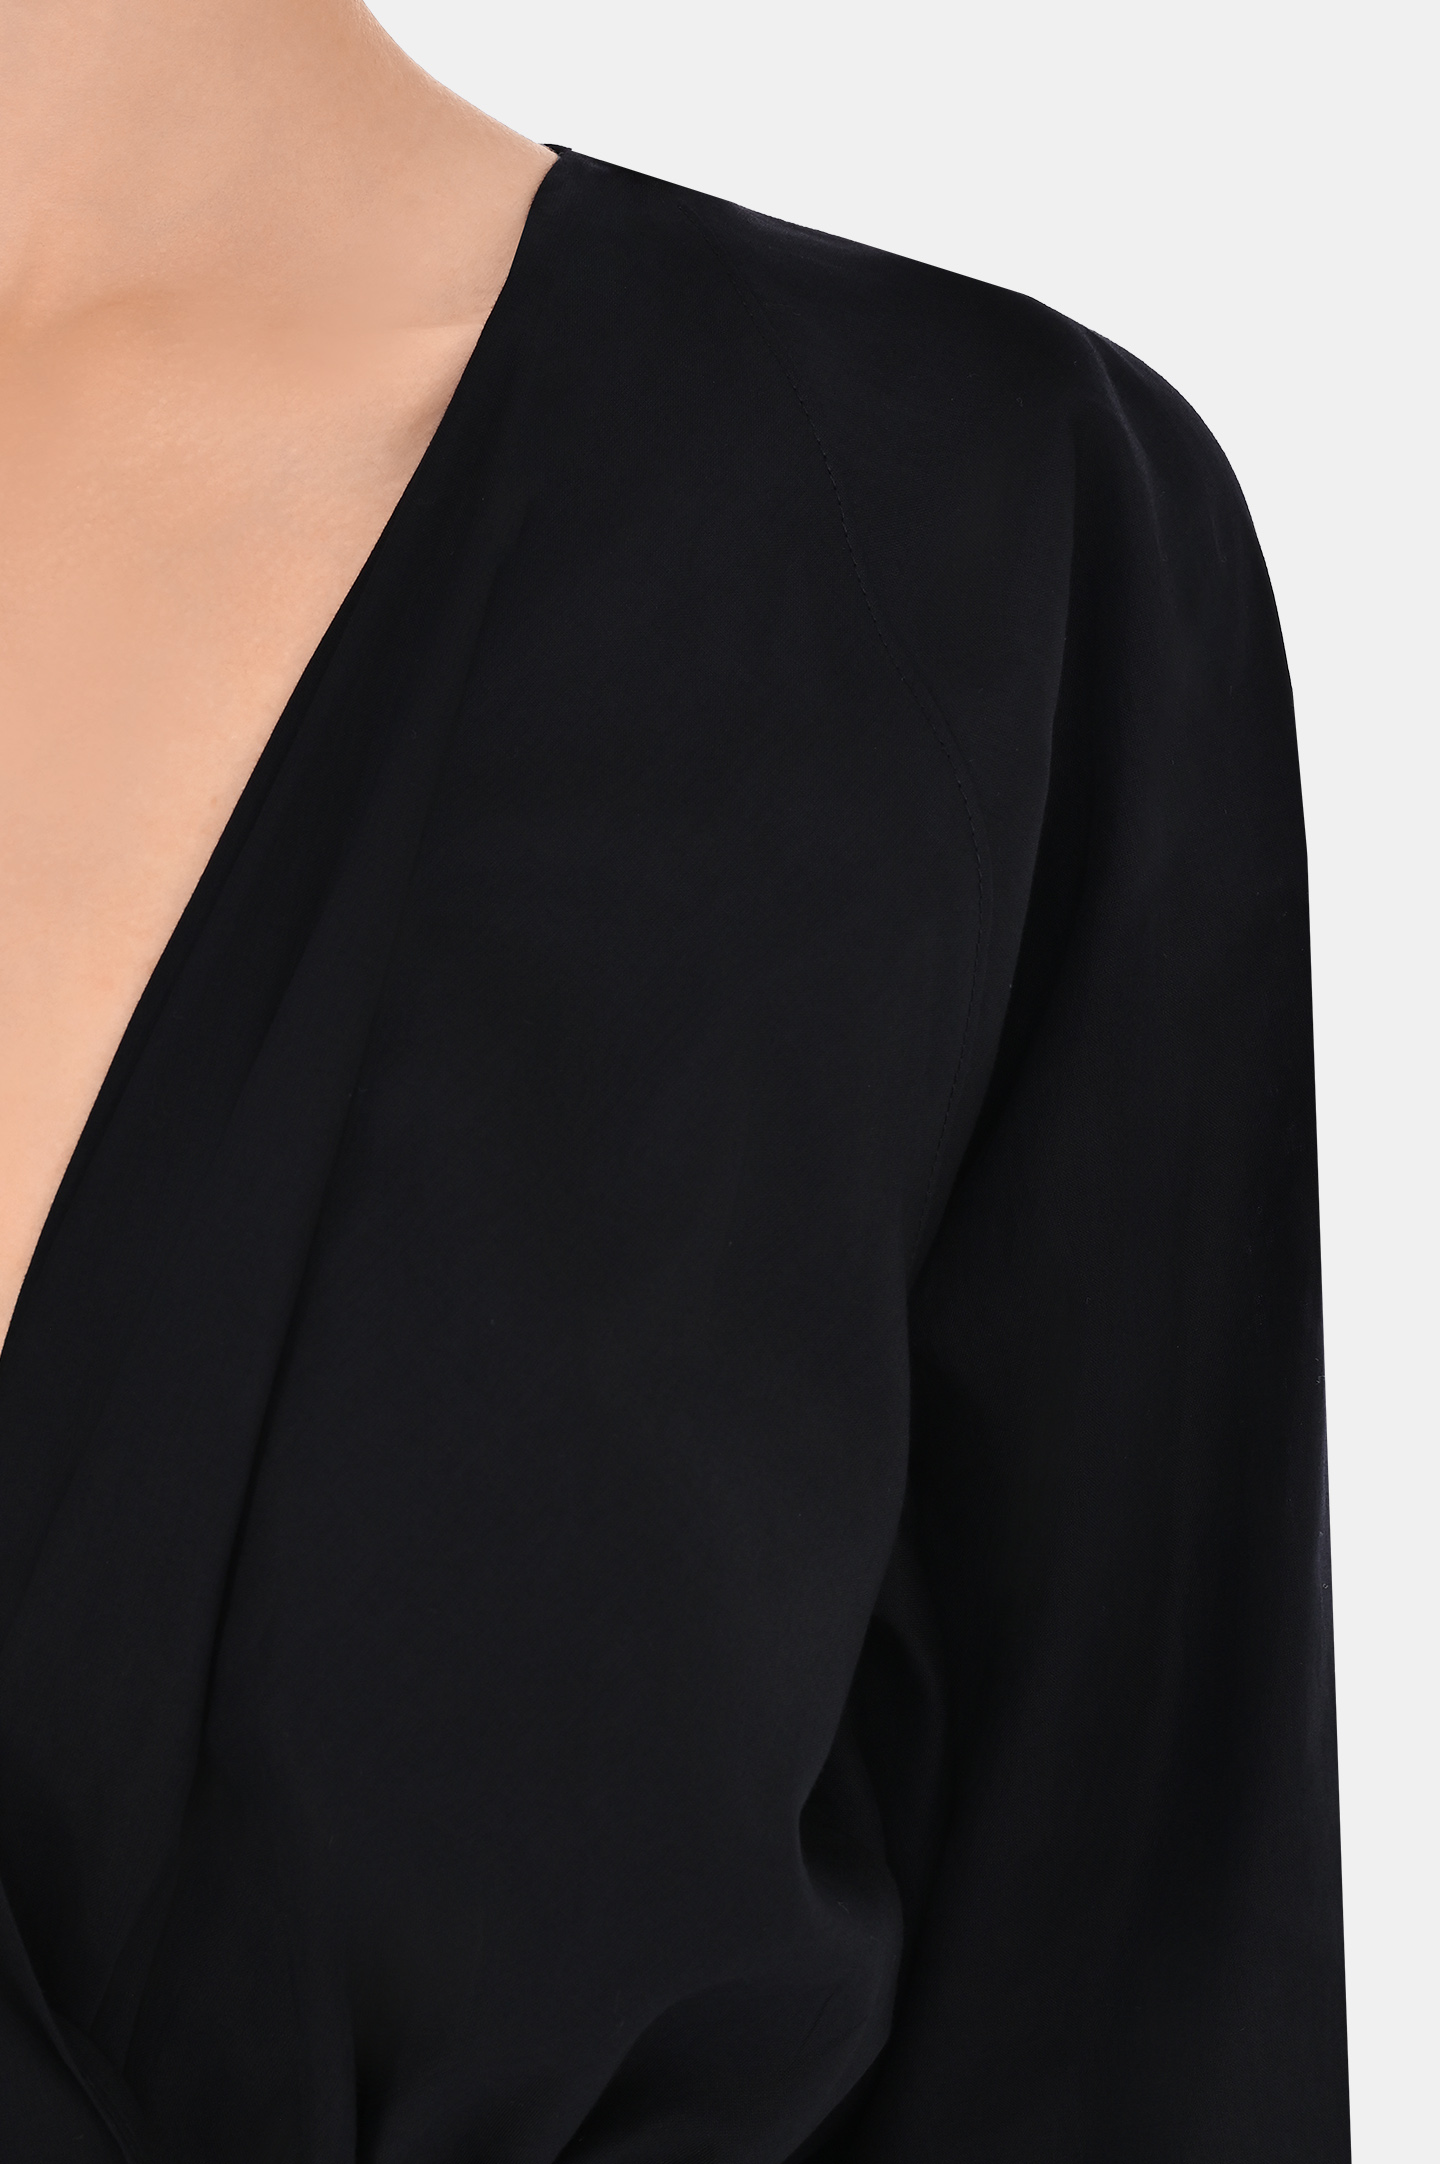 Блуза ALEXANDRE VAUTHIER 231TO18121008, цвет: Черный, Женский